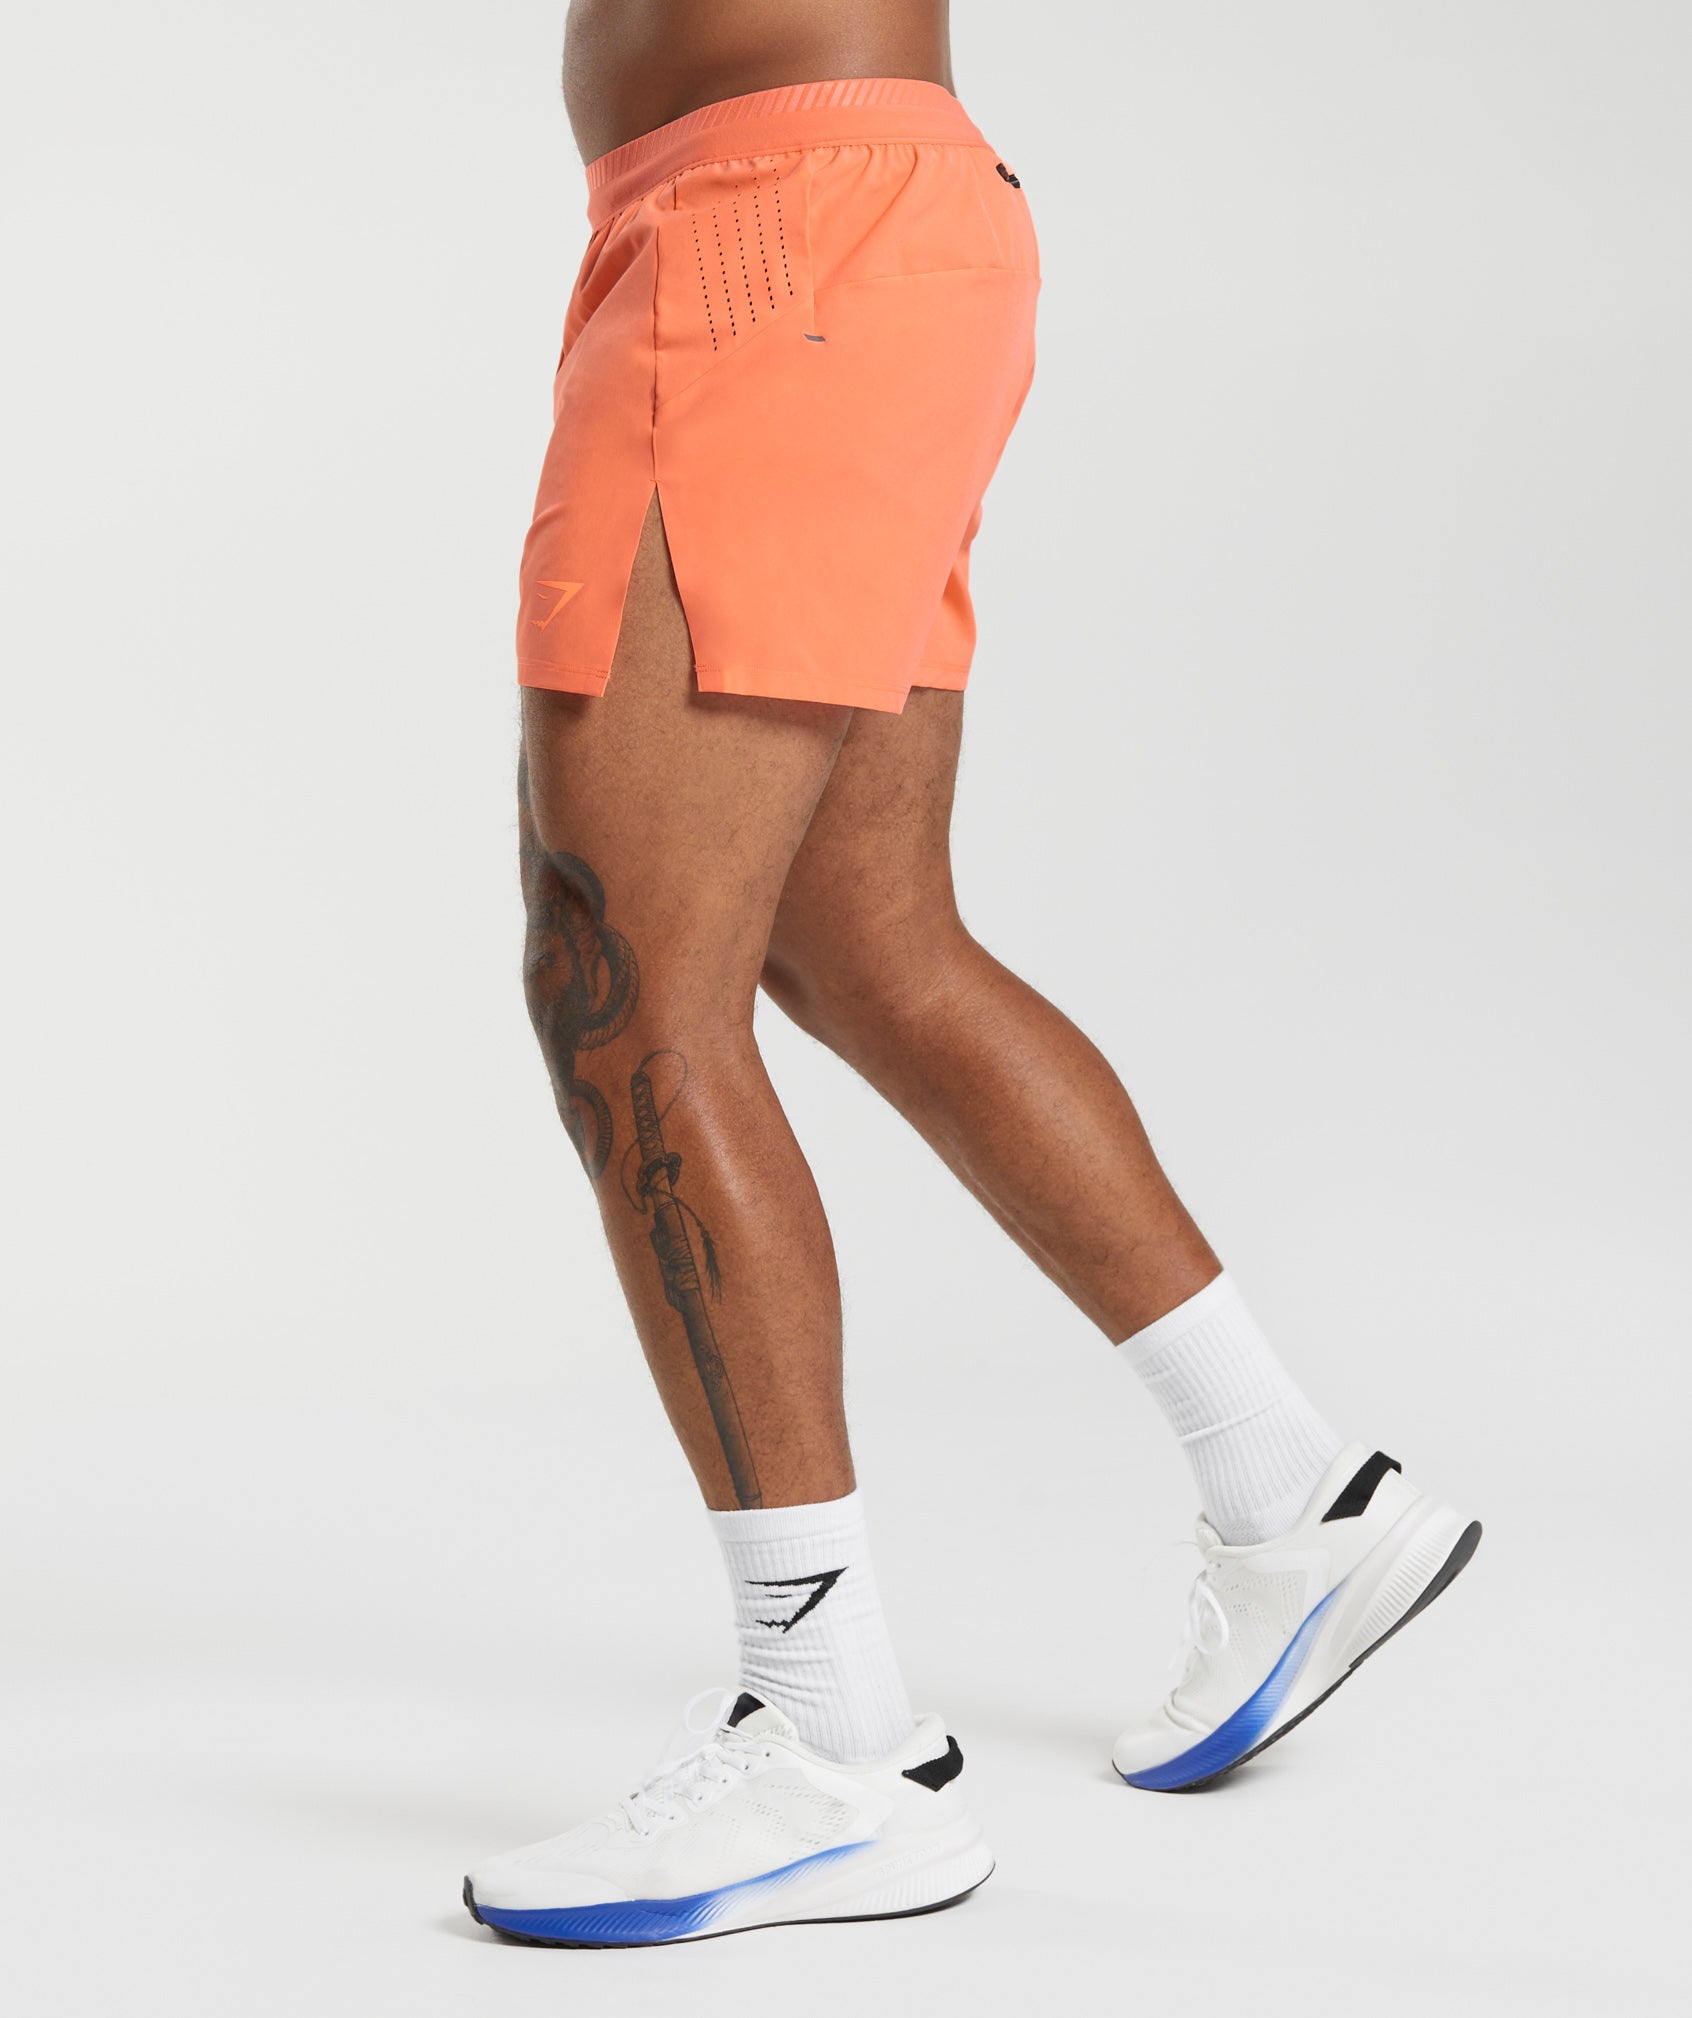 Apex Run 4" Shorts in Solstice Orange